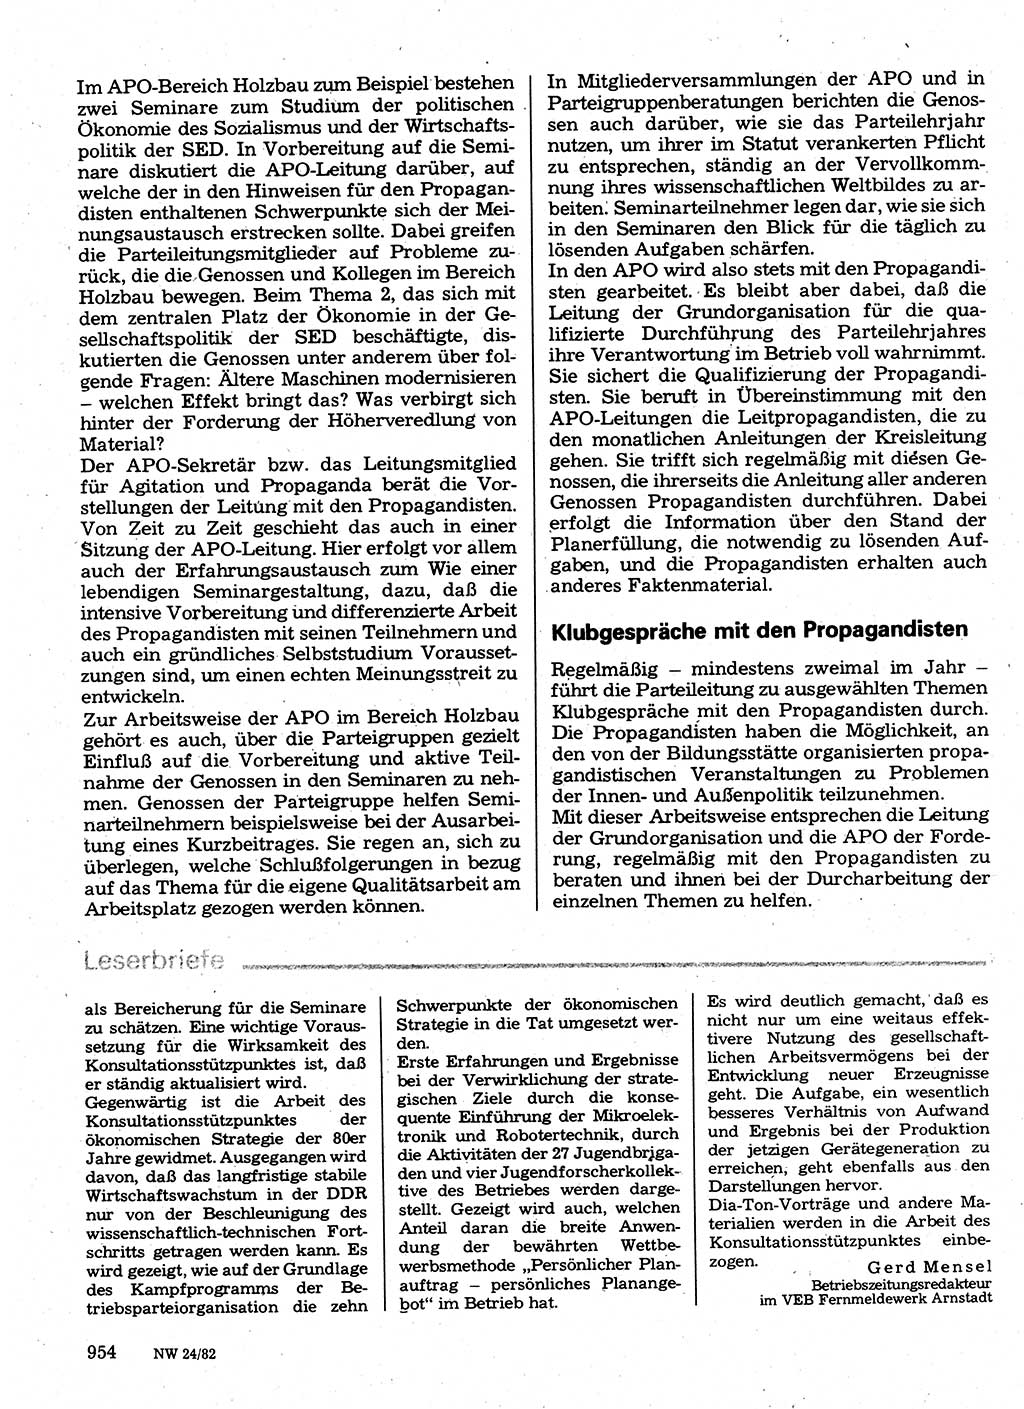 Neuer Weg (NW), Organ des Zentralkomitees (ZK) der SED (Sozialistische Einheitspartei Deutschlands) für Fragen des Parteilebens, 37. Jahrgang [Deutsche Demokratische Republik (DDR)] 1982, Seite 954 (NW ZK SED DDR 1982, S. 954)